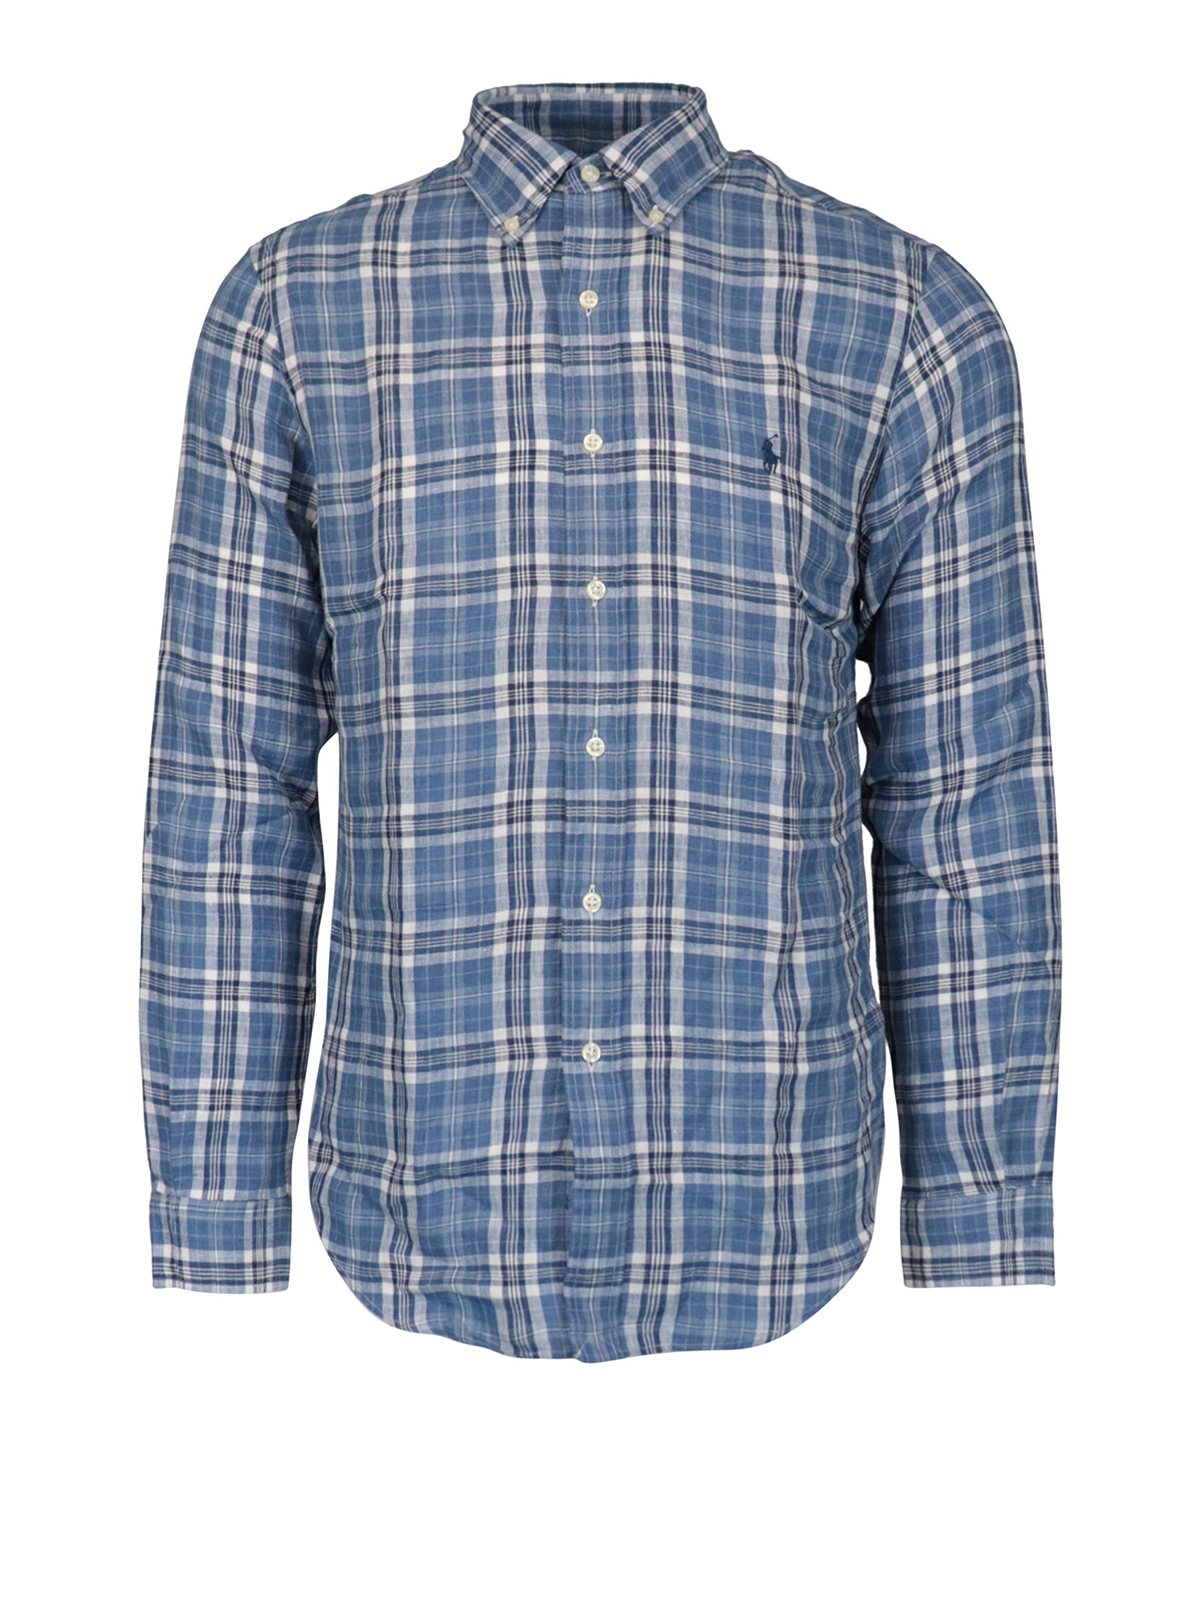 Polo Ralph Lauren - Check print linen shirt - shirts - 710795445001